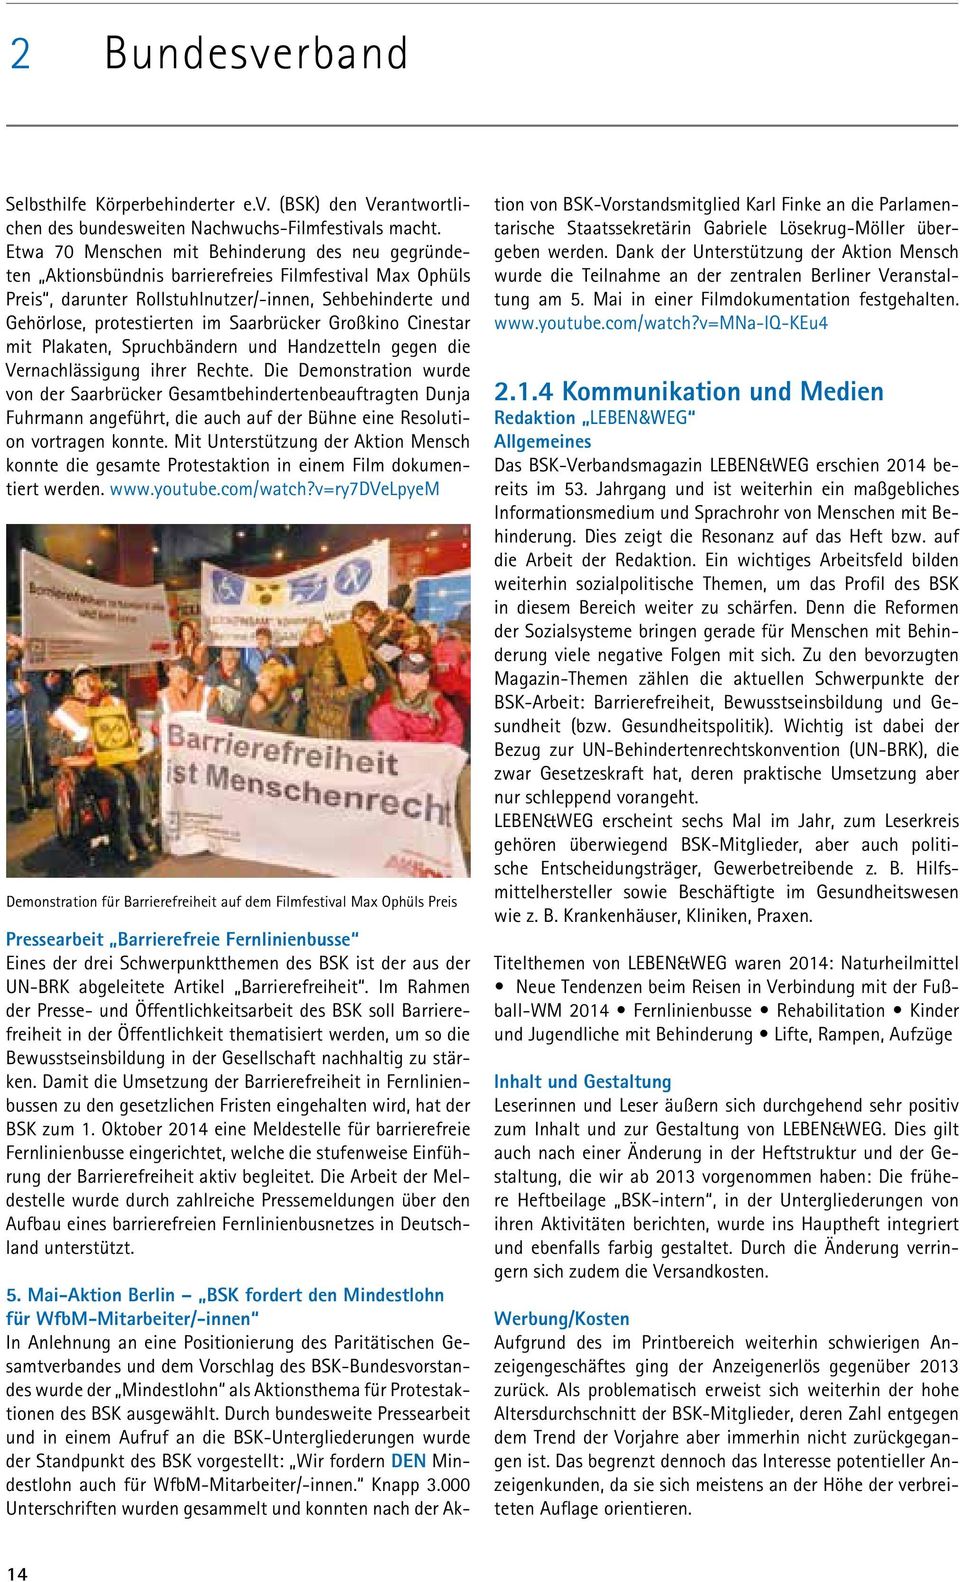 Saarbrücker Großkino Cinestar mit Plakaten, Spruchbändern und Handzetteln gegen die Vernachlässigung ihrer Rechte.